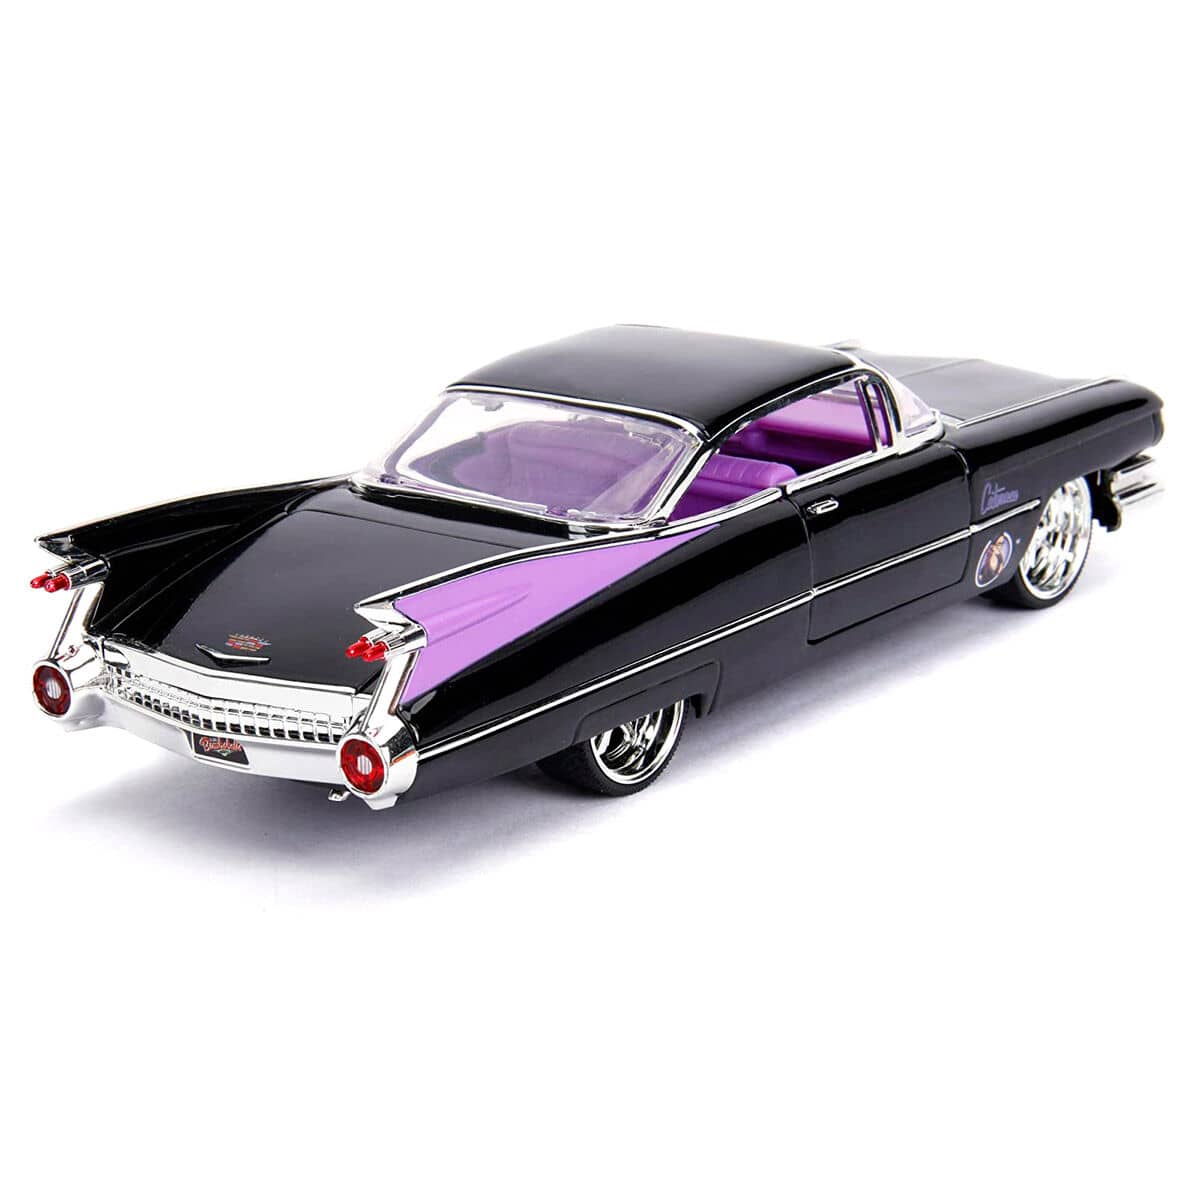 Set figura + coche metal Cadillac Coupe Deville 1959 Catwoman DC Comics - Espadas y Más